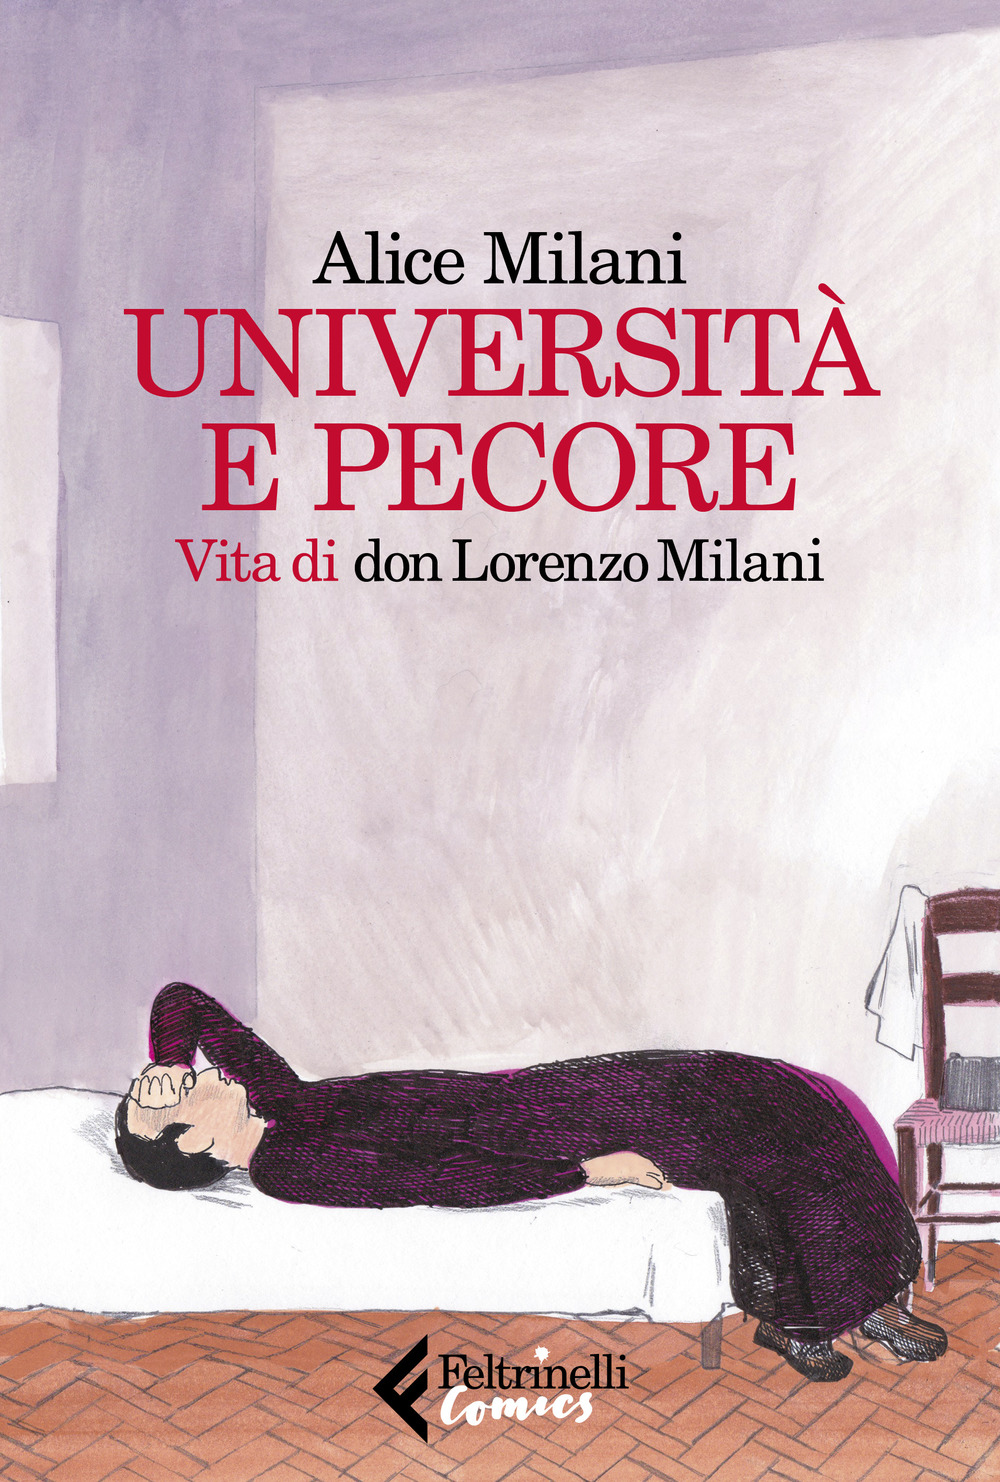 Libri Alice Milani - Universita E Pecore. Vita Di Don Lorenzo Milani NUOVO SIGILLATO, EDIZIONE DEL 17/10/2019 SUBITO DISPONIBILE